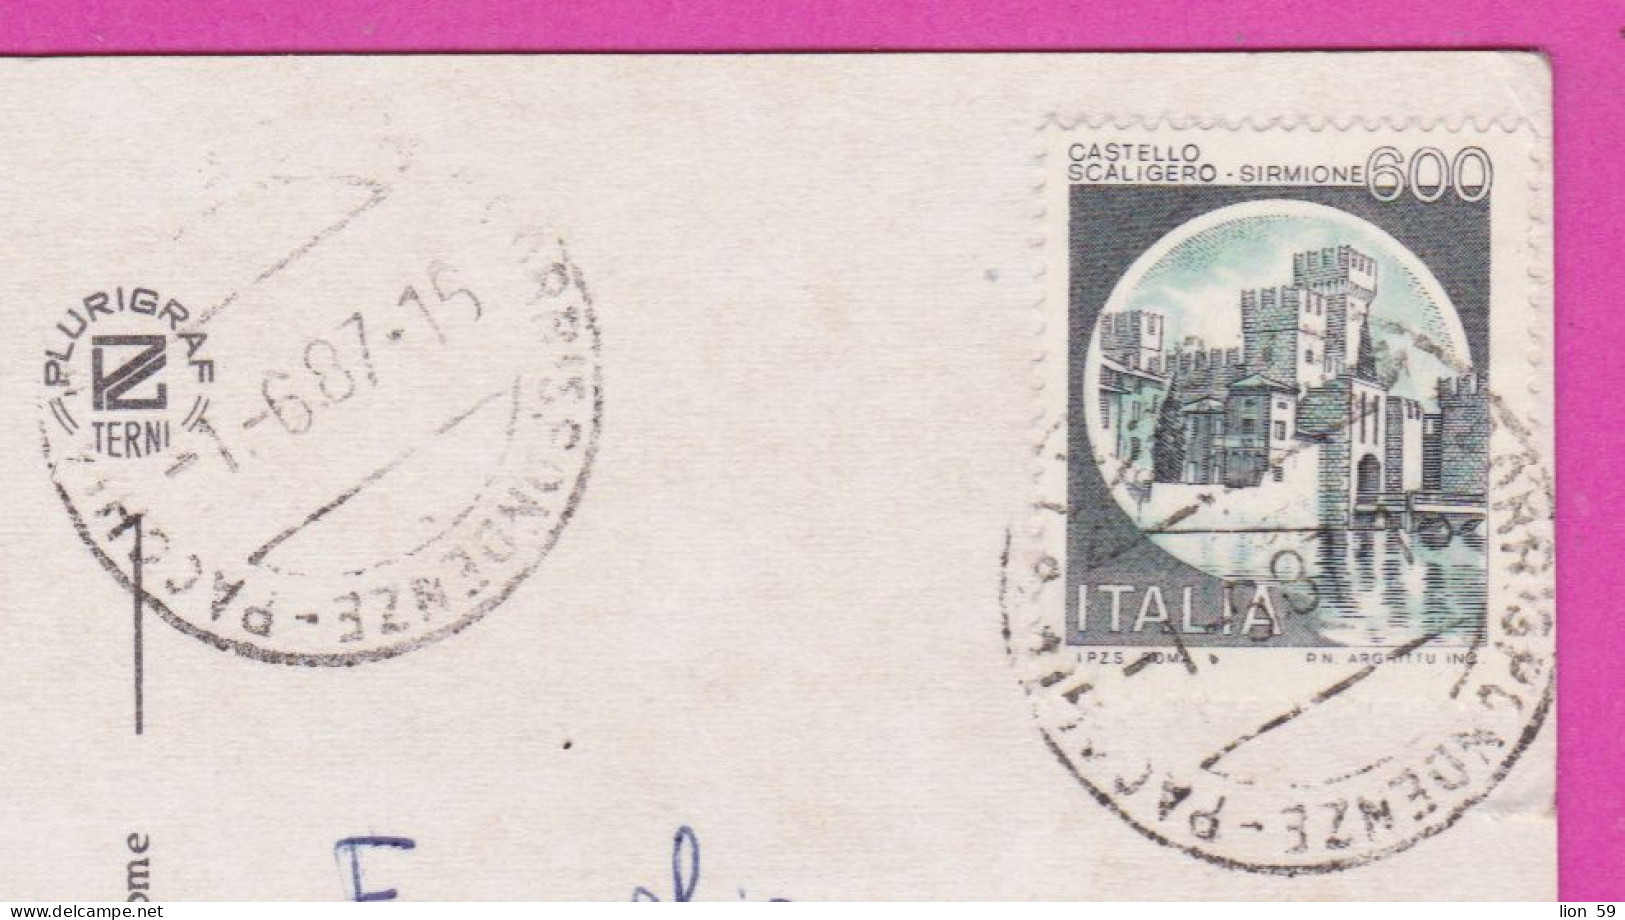 293885 / Italy - Macerata 5 View Panorama PC 1987 USED 600 L Castello Scaligero Di Sirmione , Castle Italia Italie - 1981-90: Marcophilia